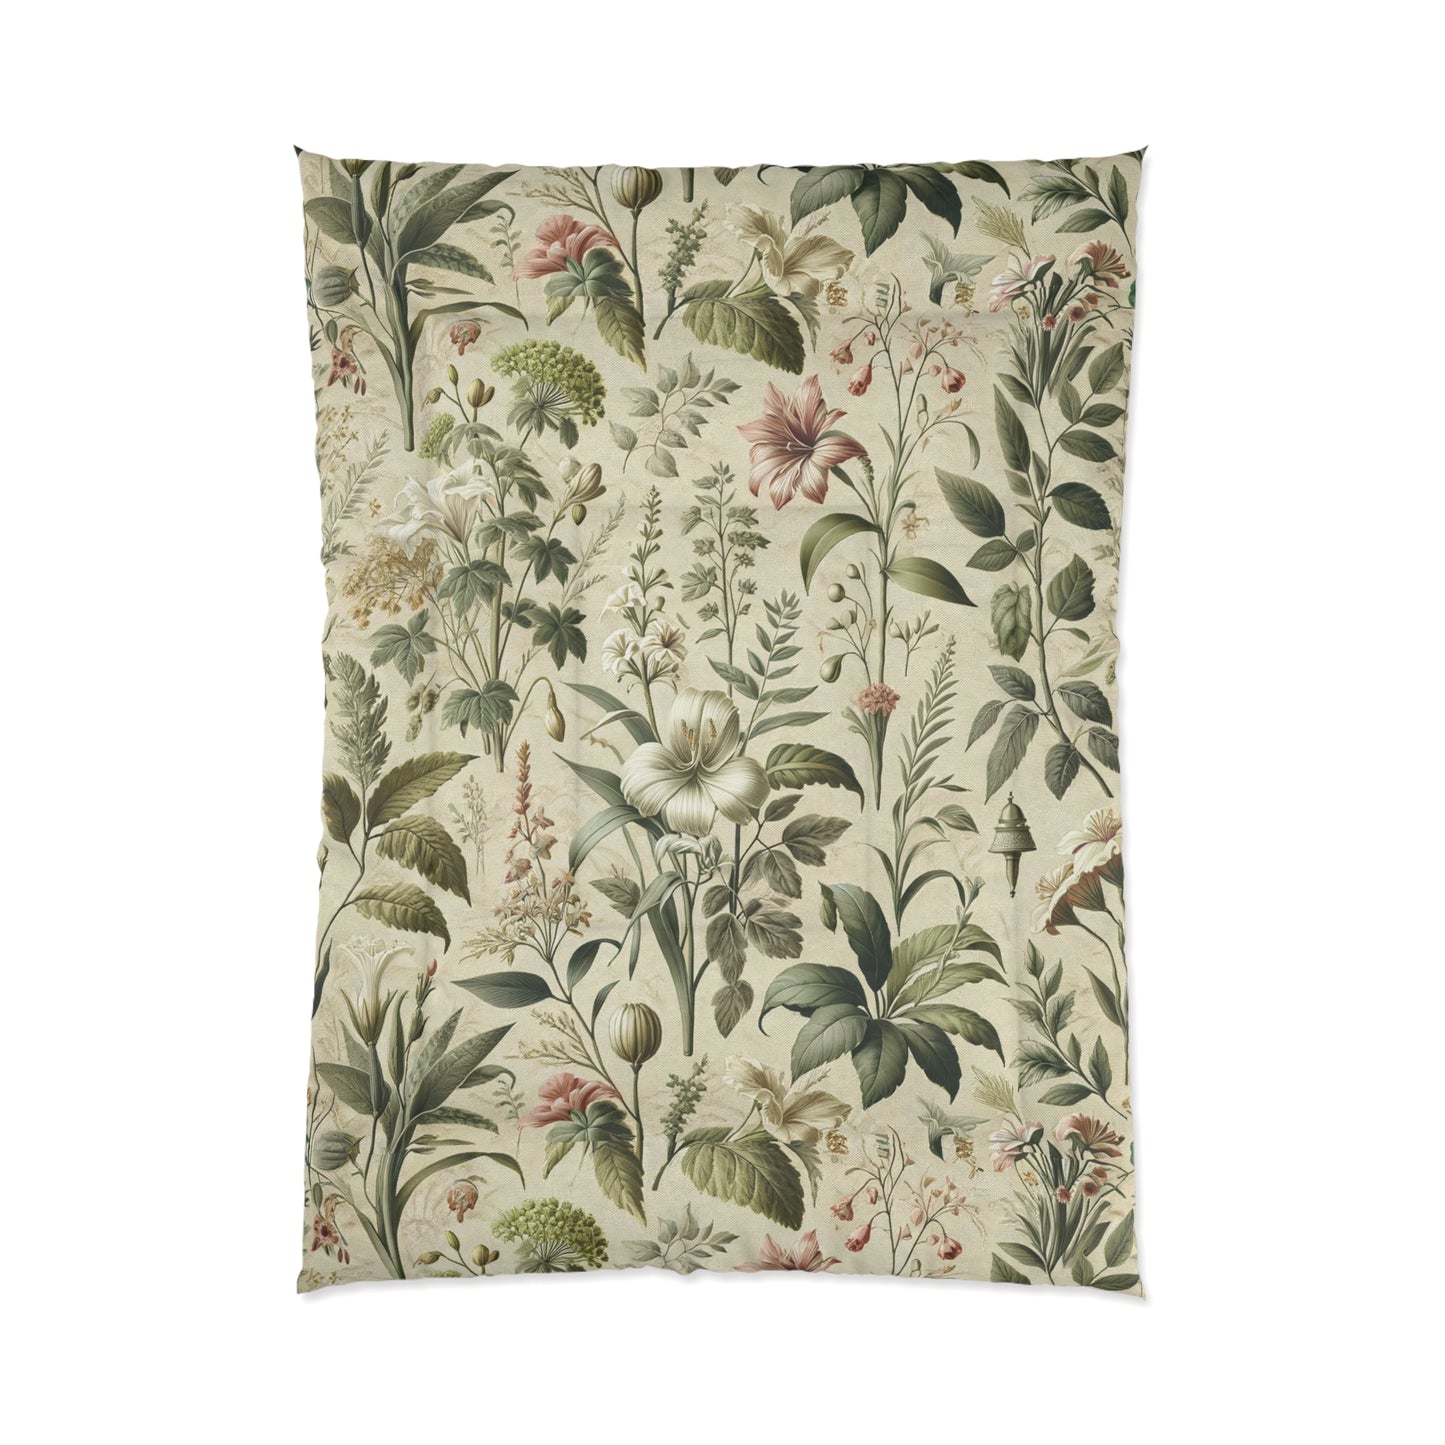 Botanical Reverie Comforter